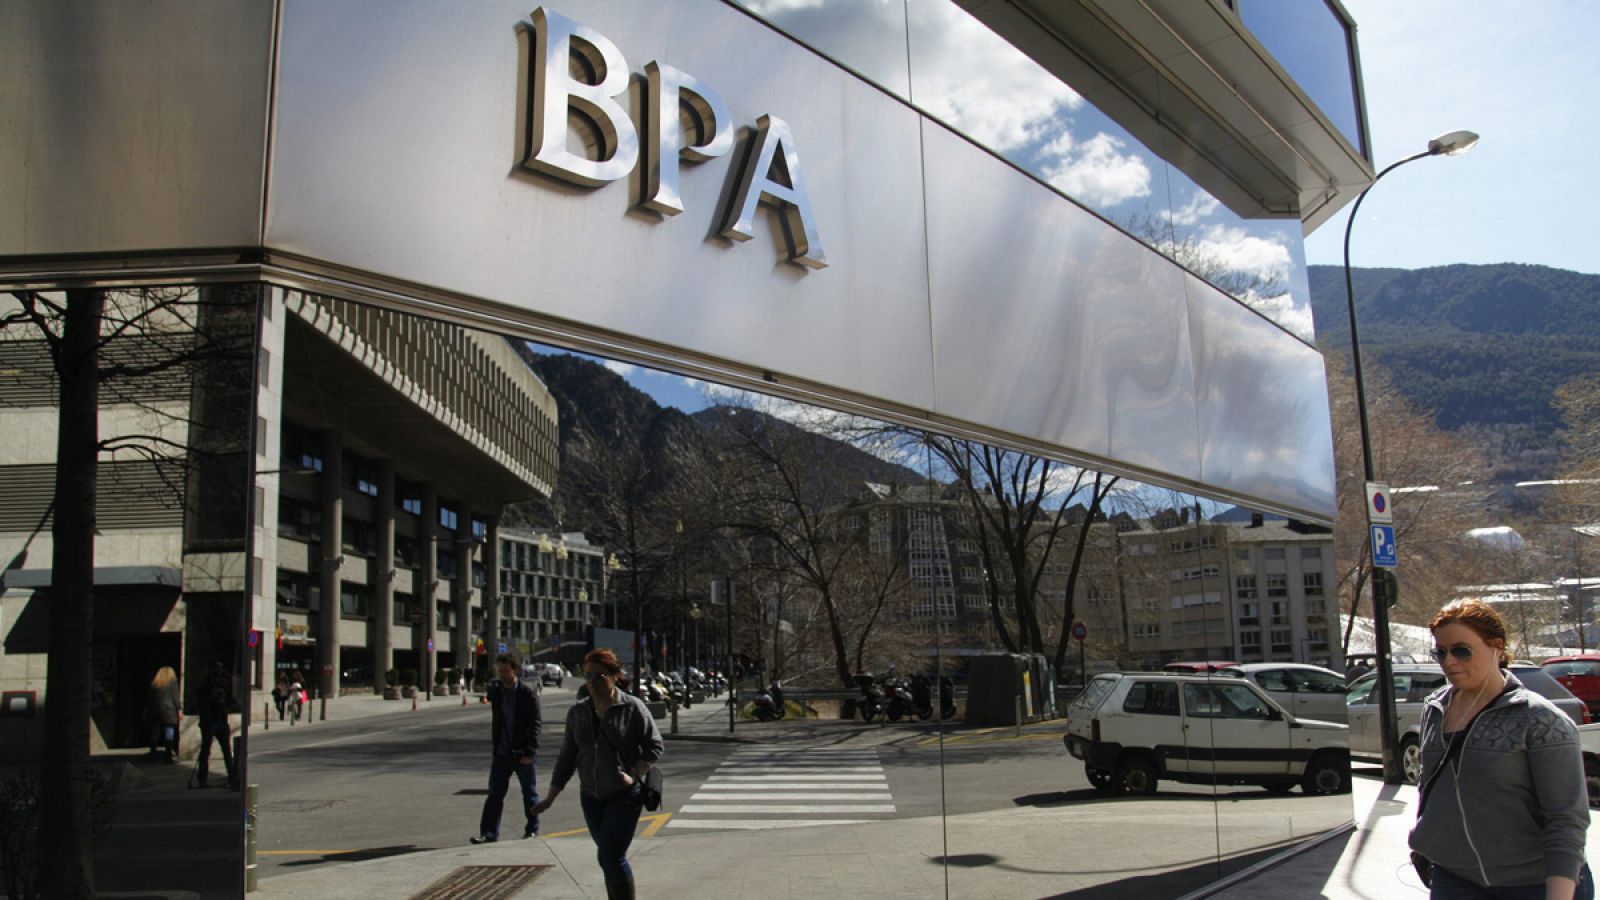 La sede del gobierno de Andorra reflejada en la fachada de la sede principal de Banca Privada de Andorra (BPA)